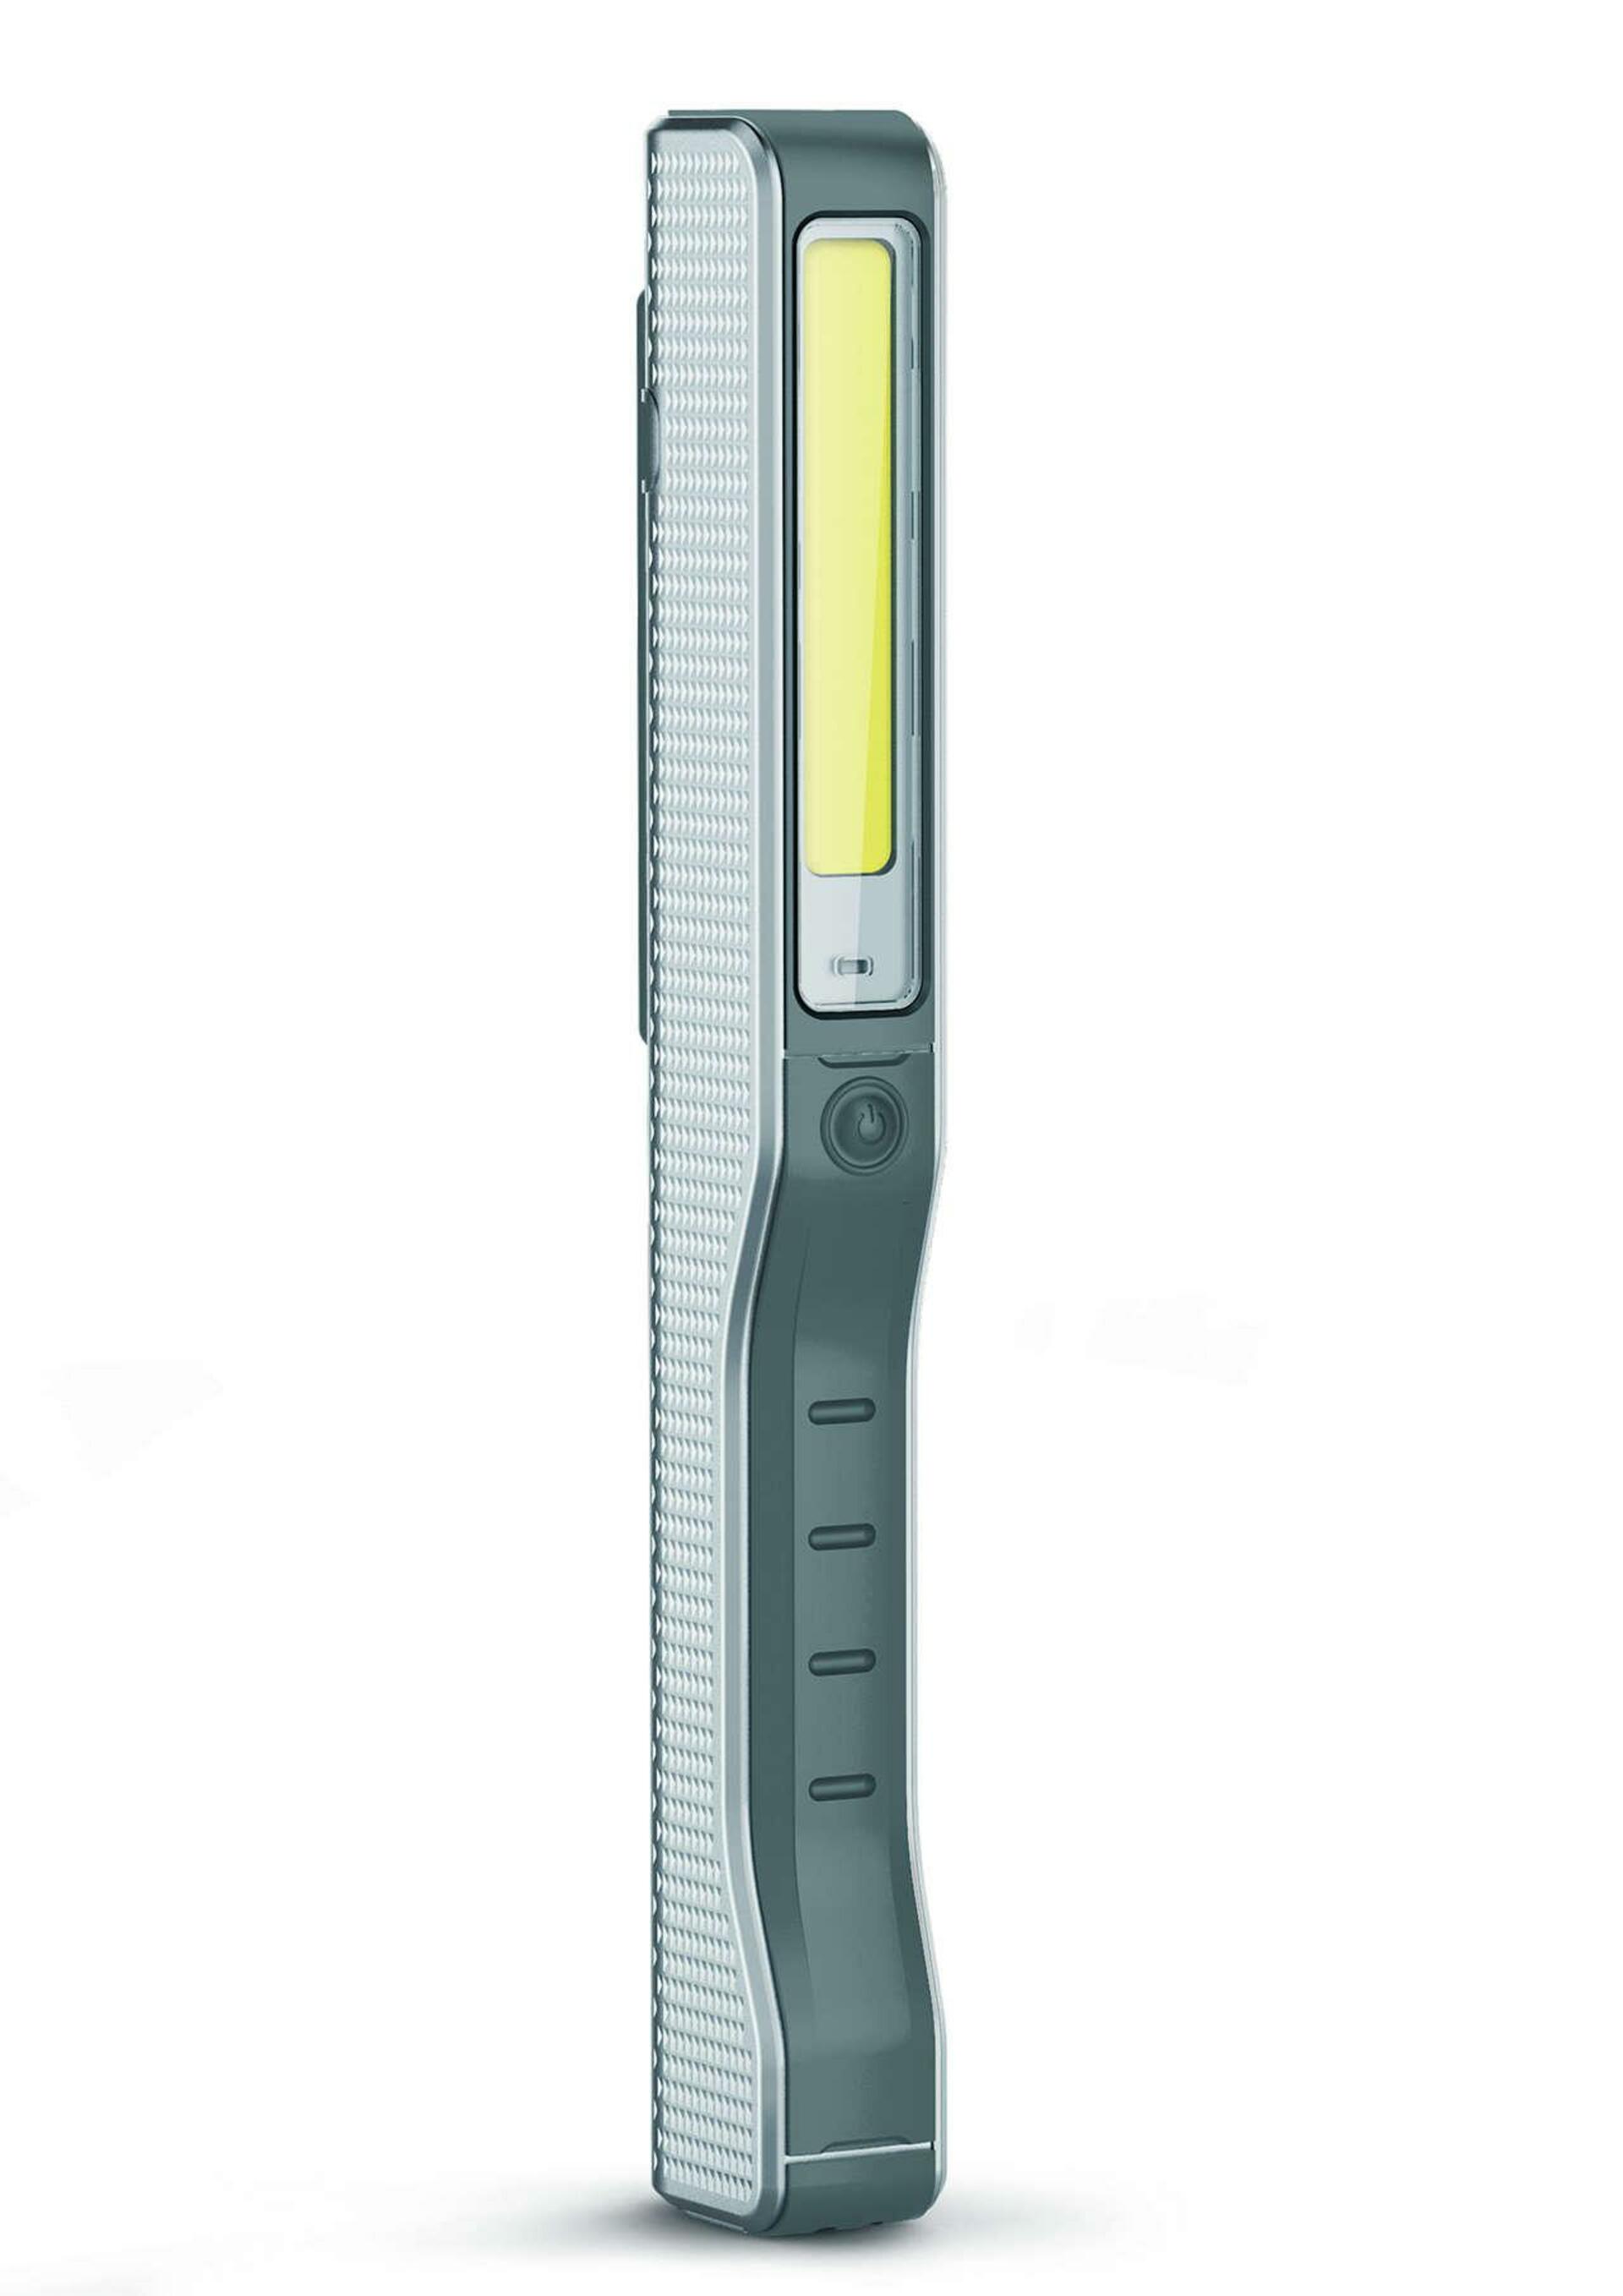 Philips LED pracovní kapesní svítilna Penlight Premium Color+ LPL81X1